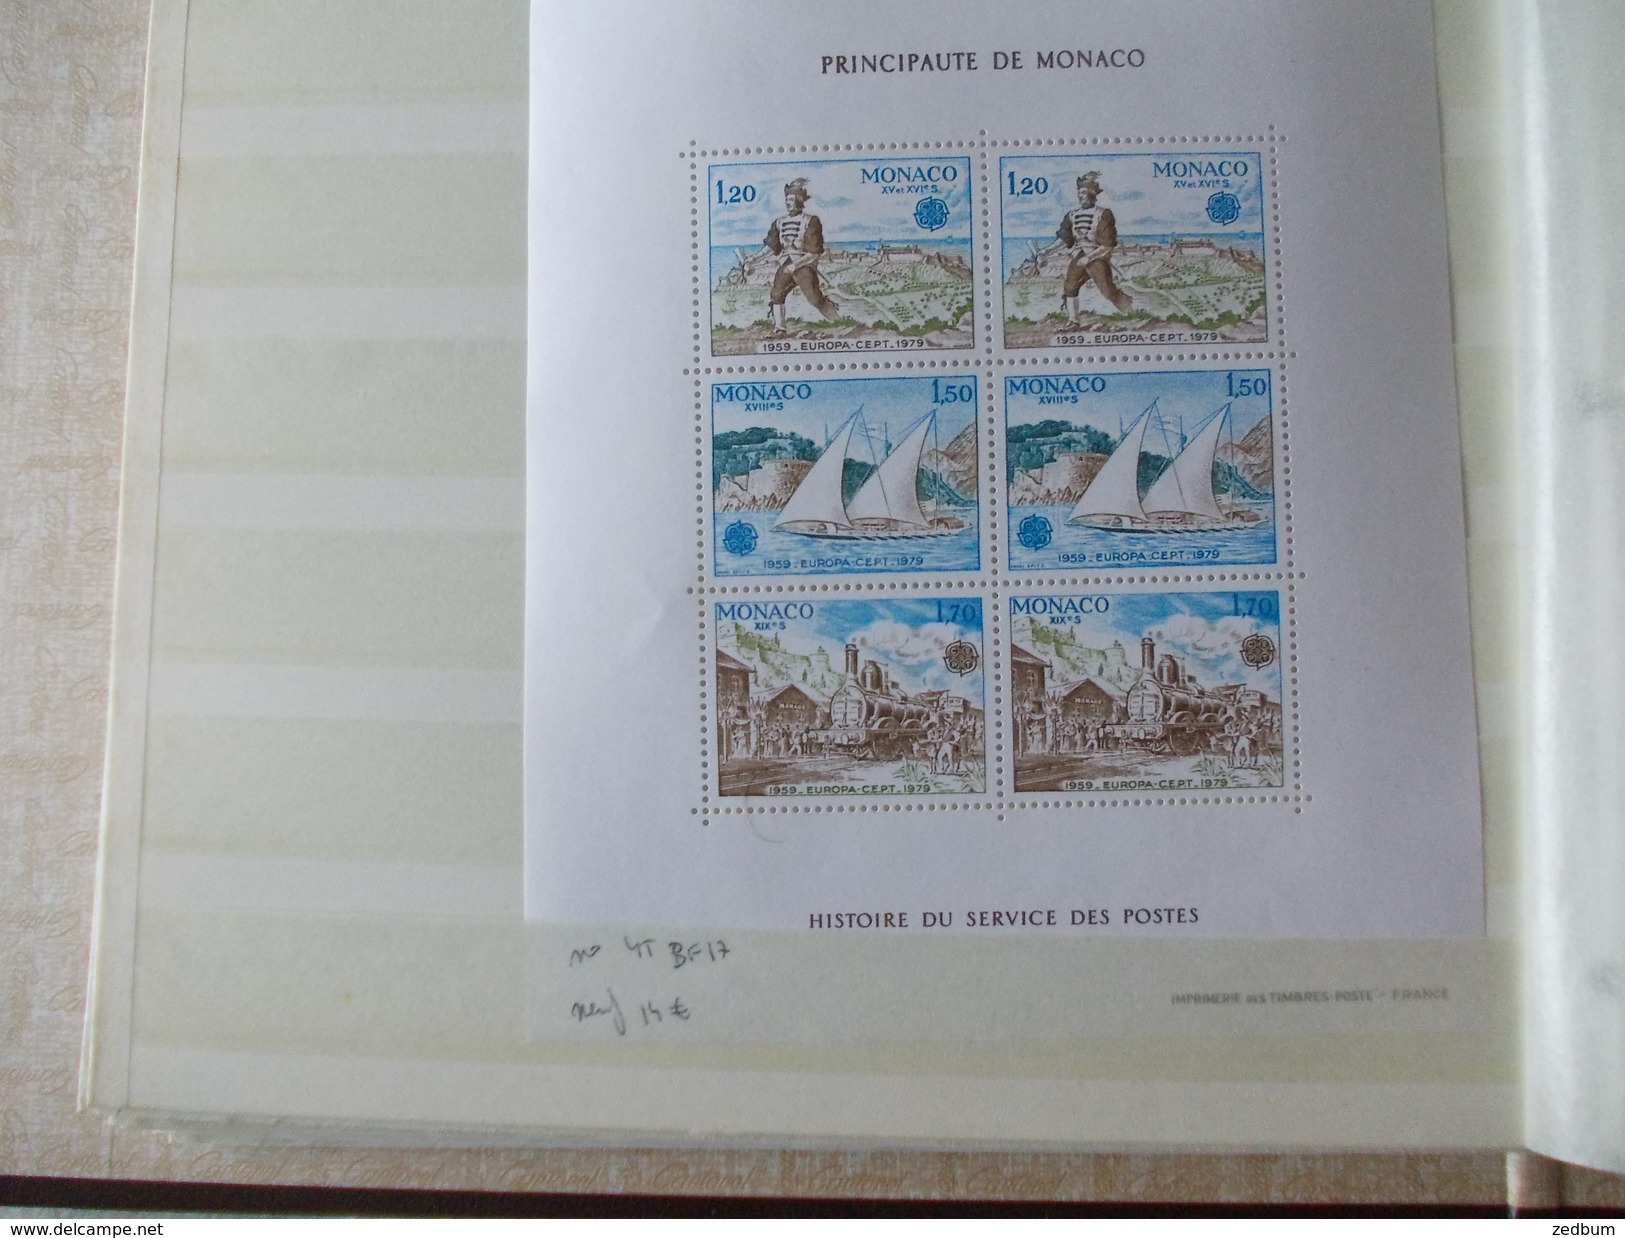 ALBUM 7 collection de timbres avec pour thème le chemin de fer train de tout pays valeur 286.40 &euro;